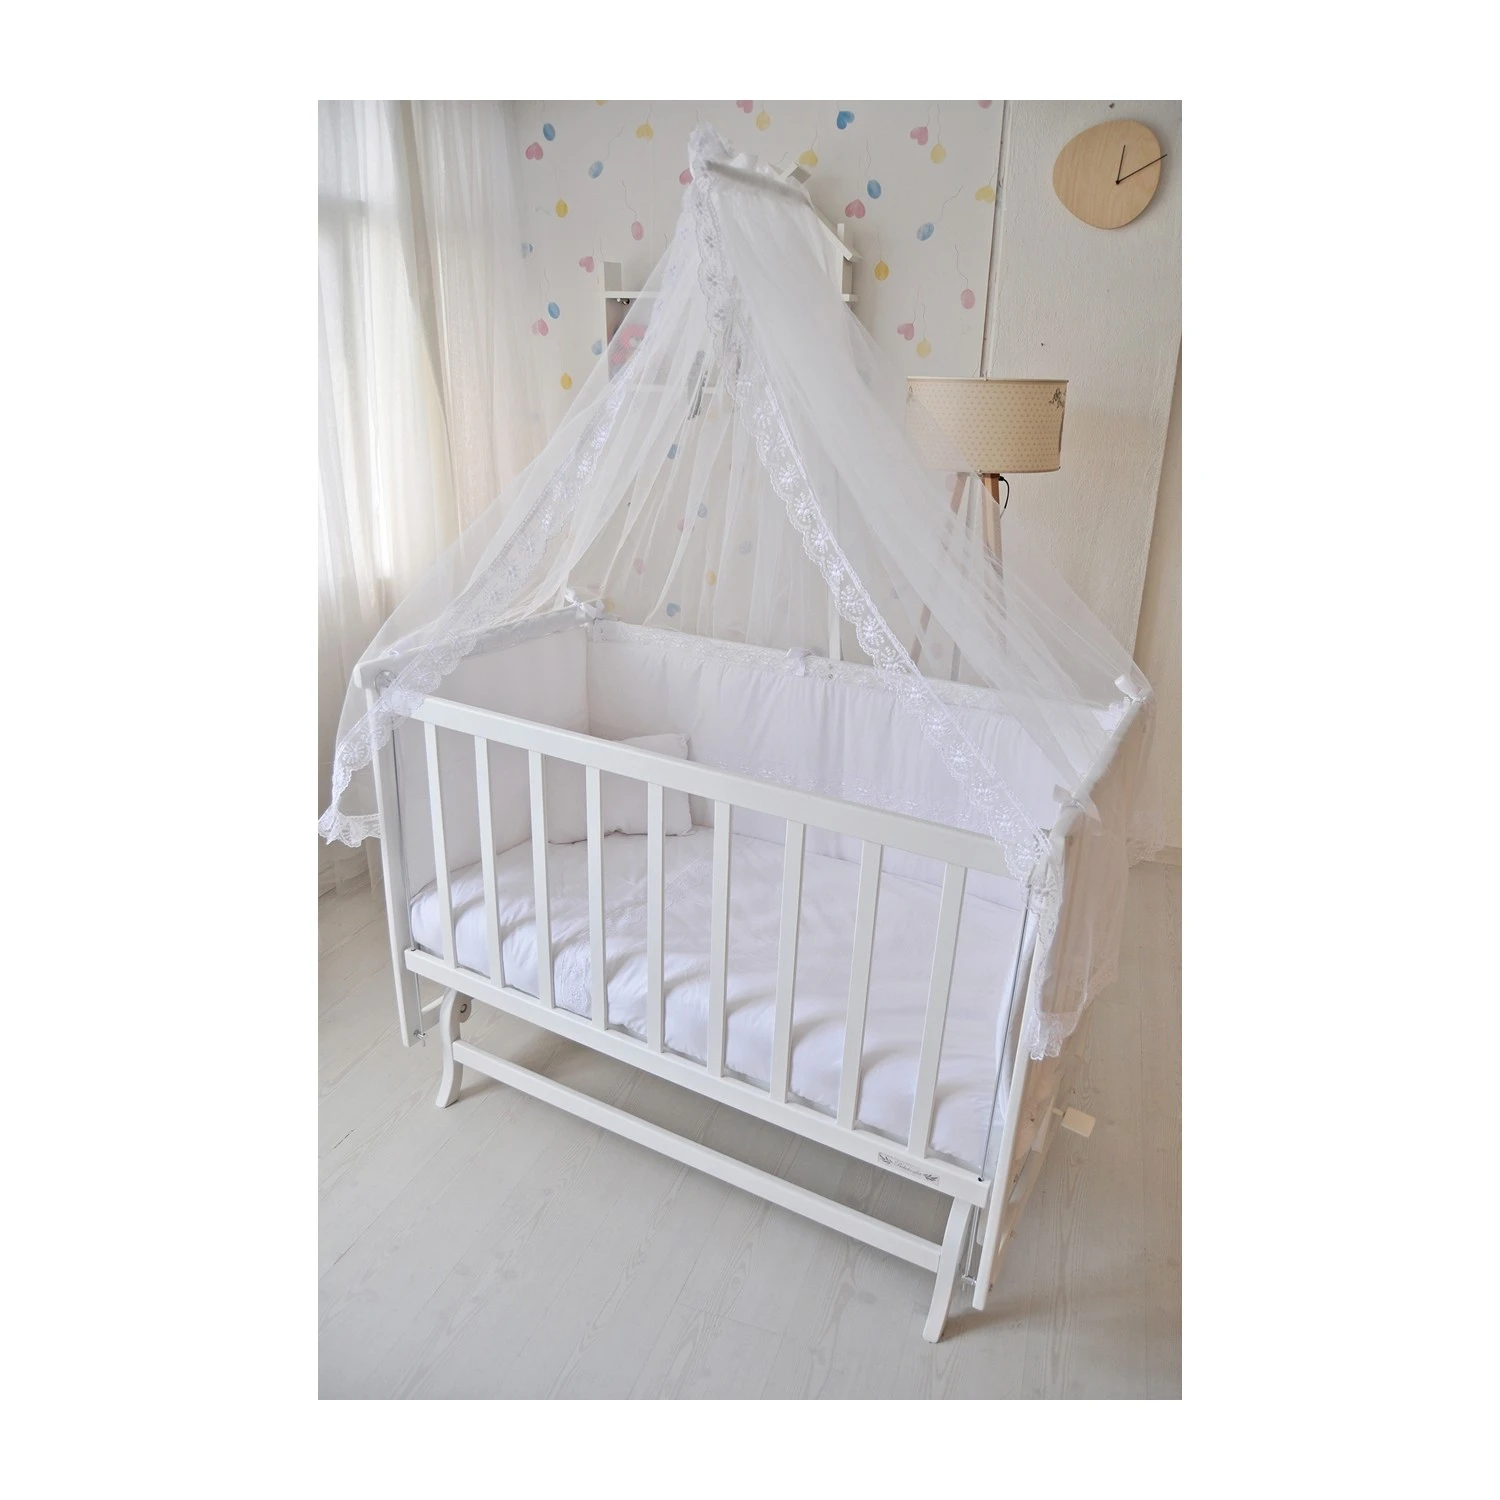 Drveni krevetac kolevka - drveni krevetac ili kolevka za bebe sa baldahinom